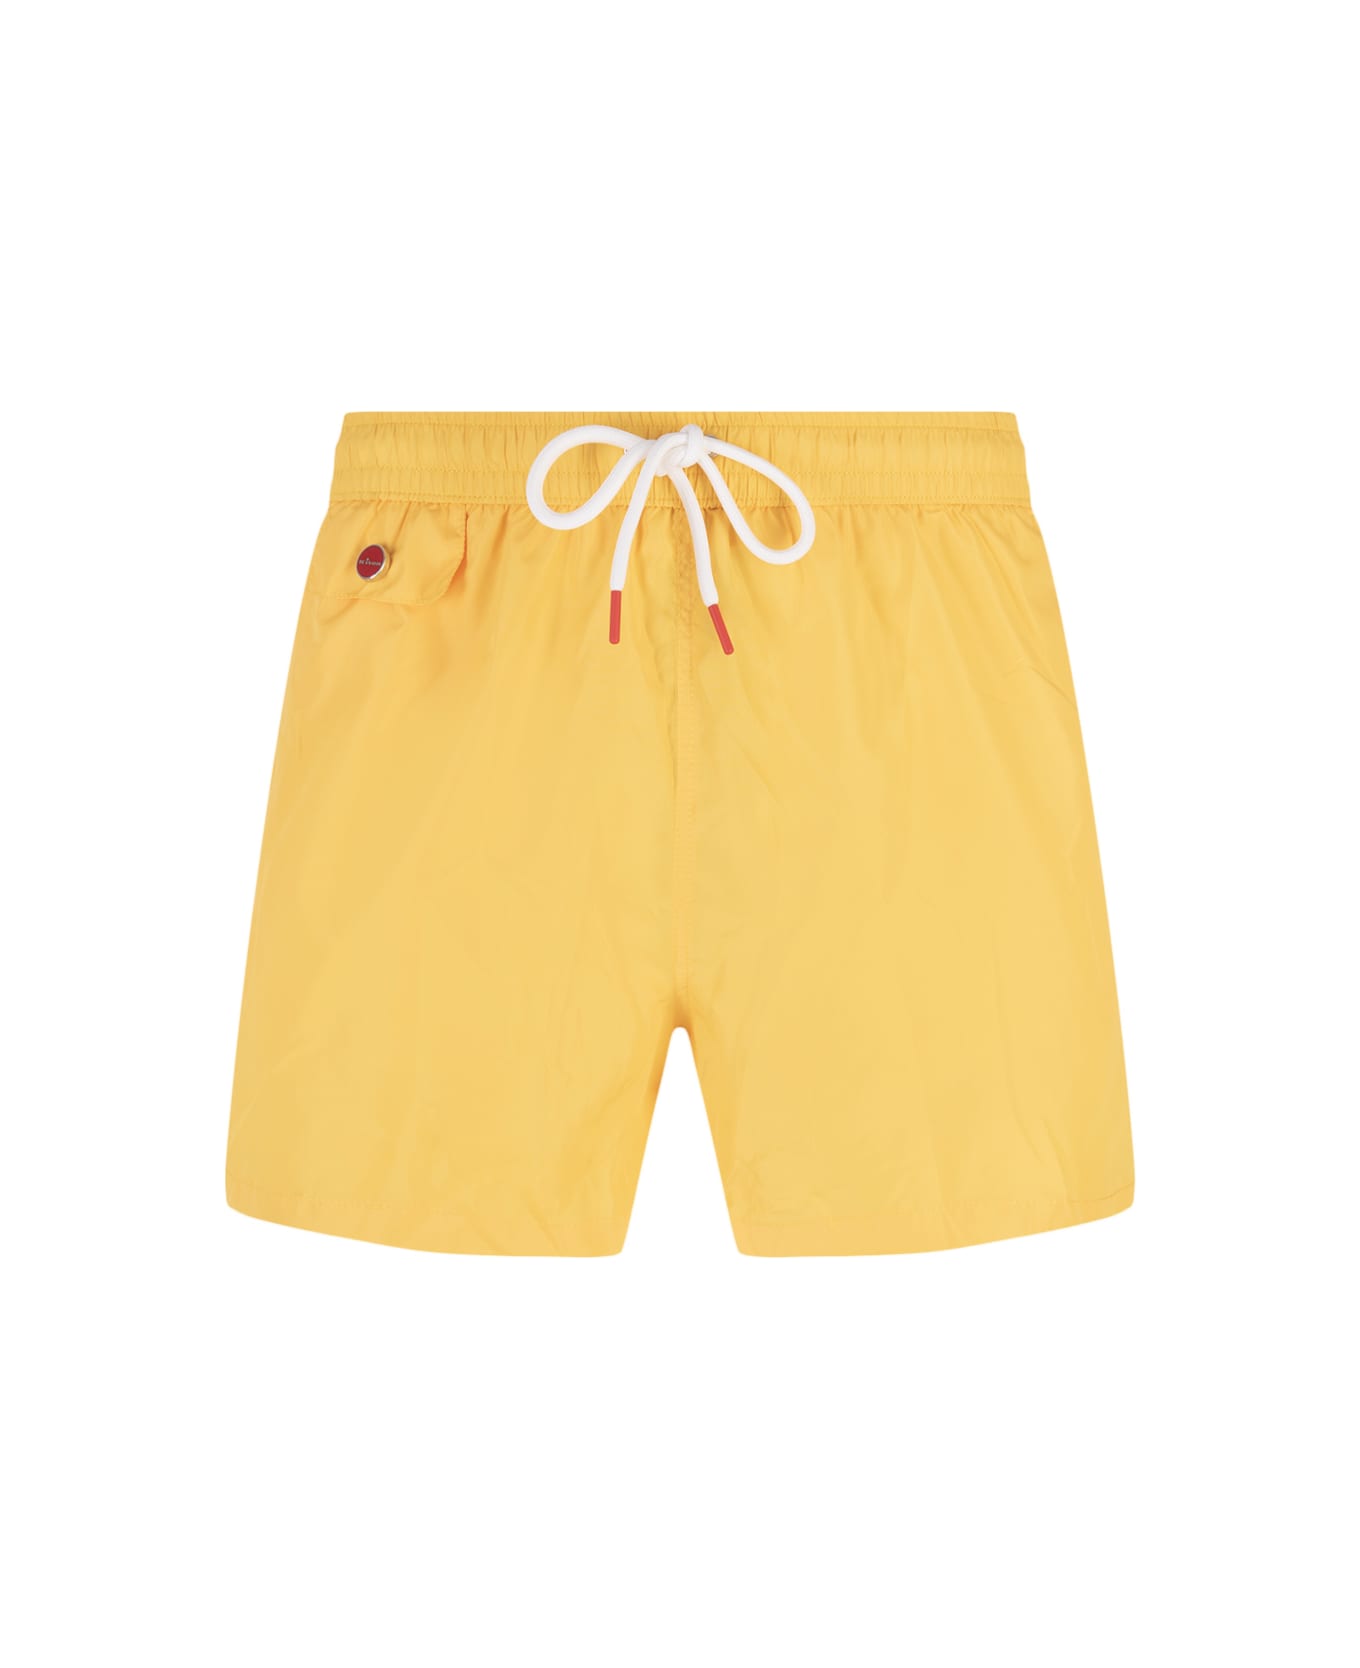 Kiton Yellow Swim Shorts - Yellow スイムトランクス